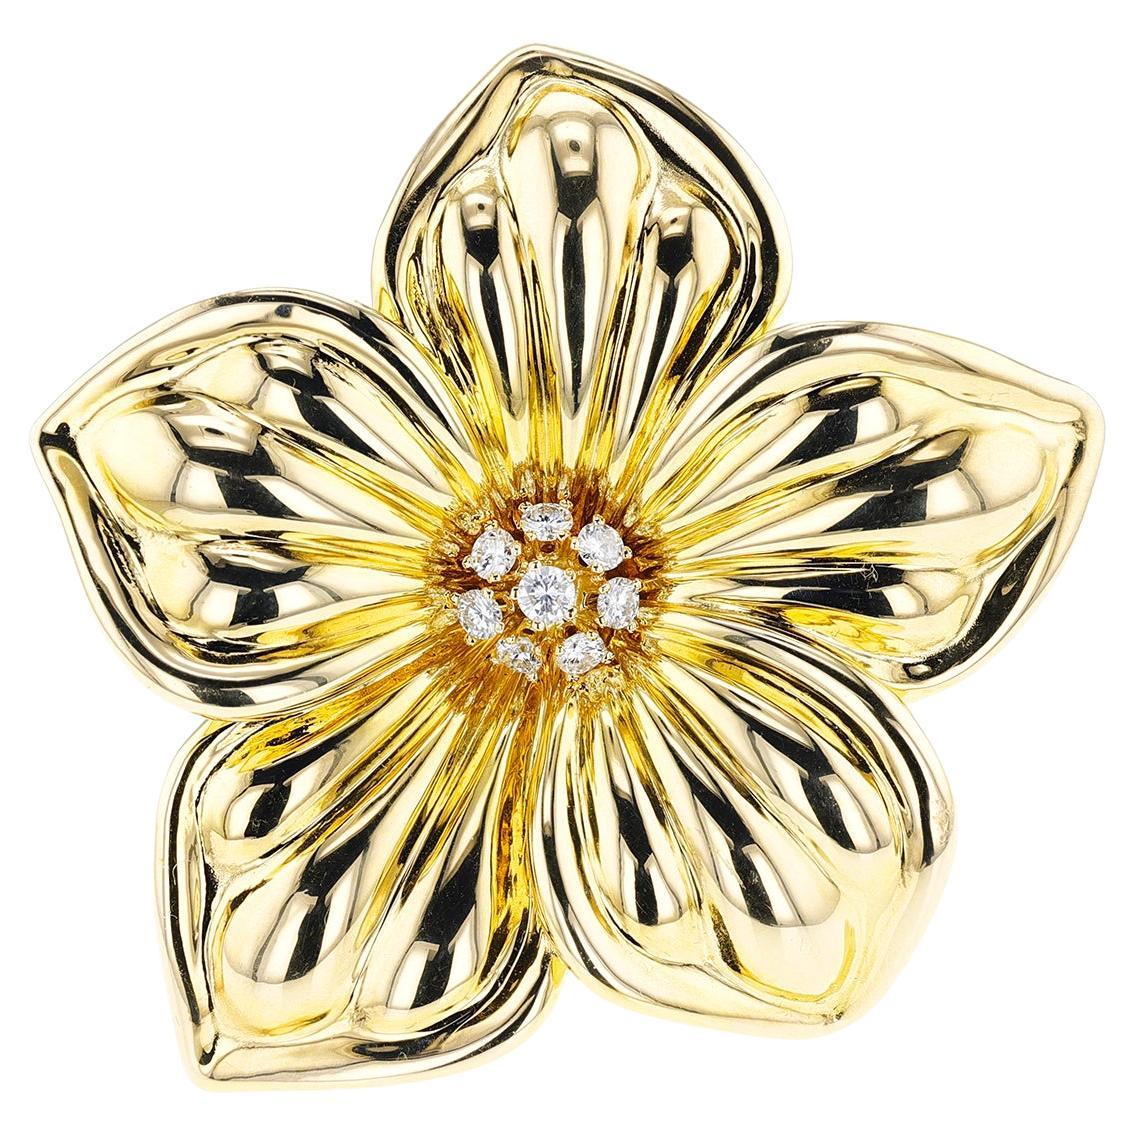 Van Cleef & Arpels Gold and Diamond Floral Brooch, 18k